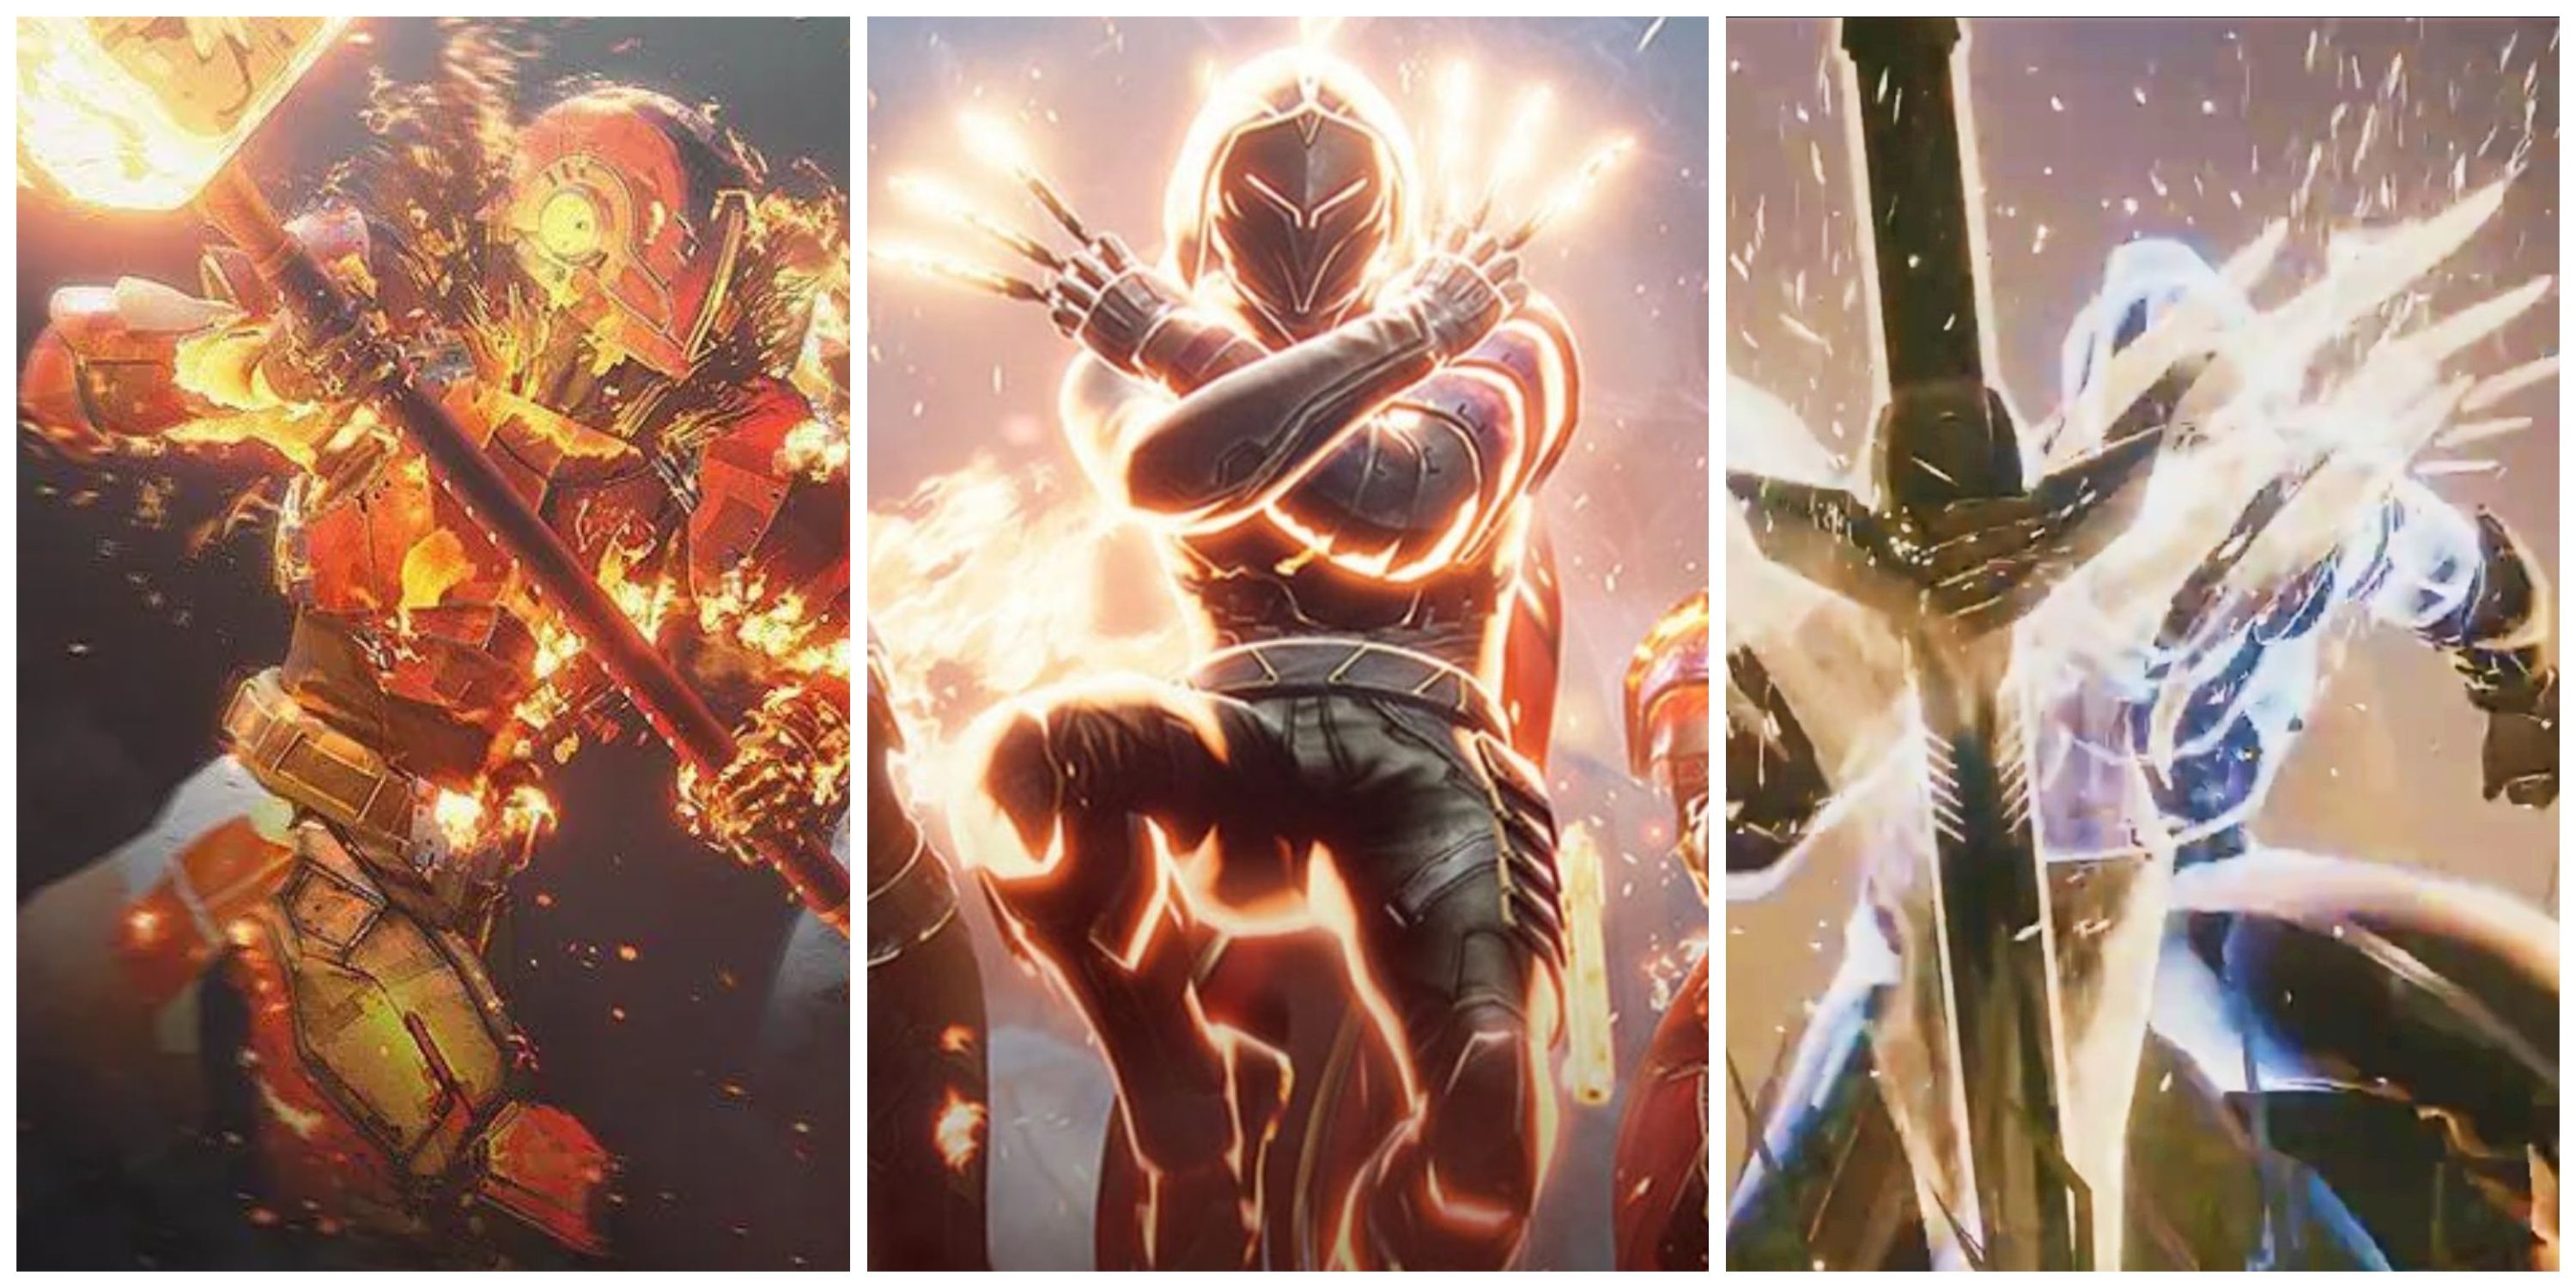 titans, hunters, warlocks using supers